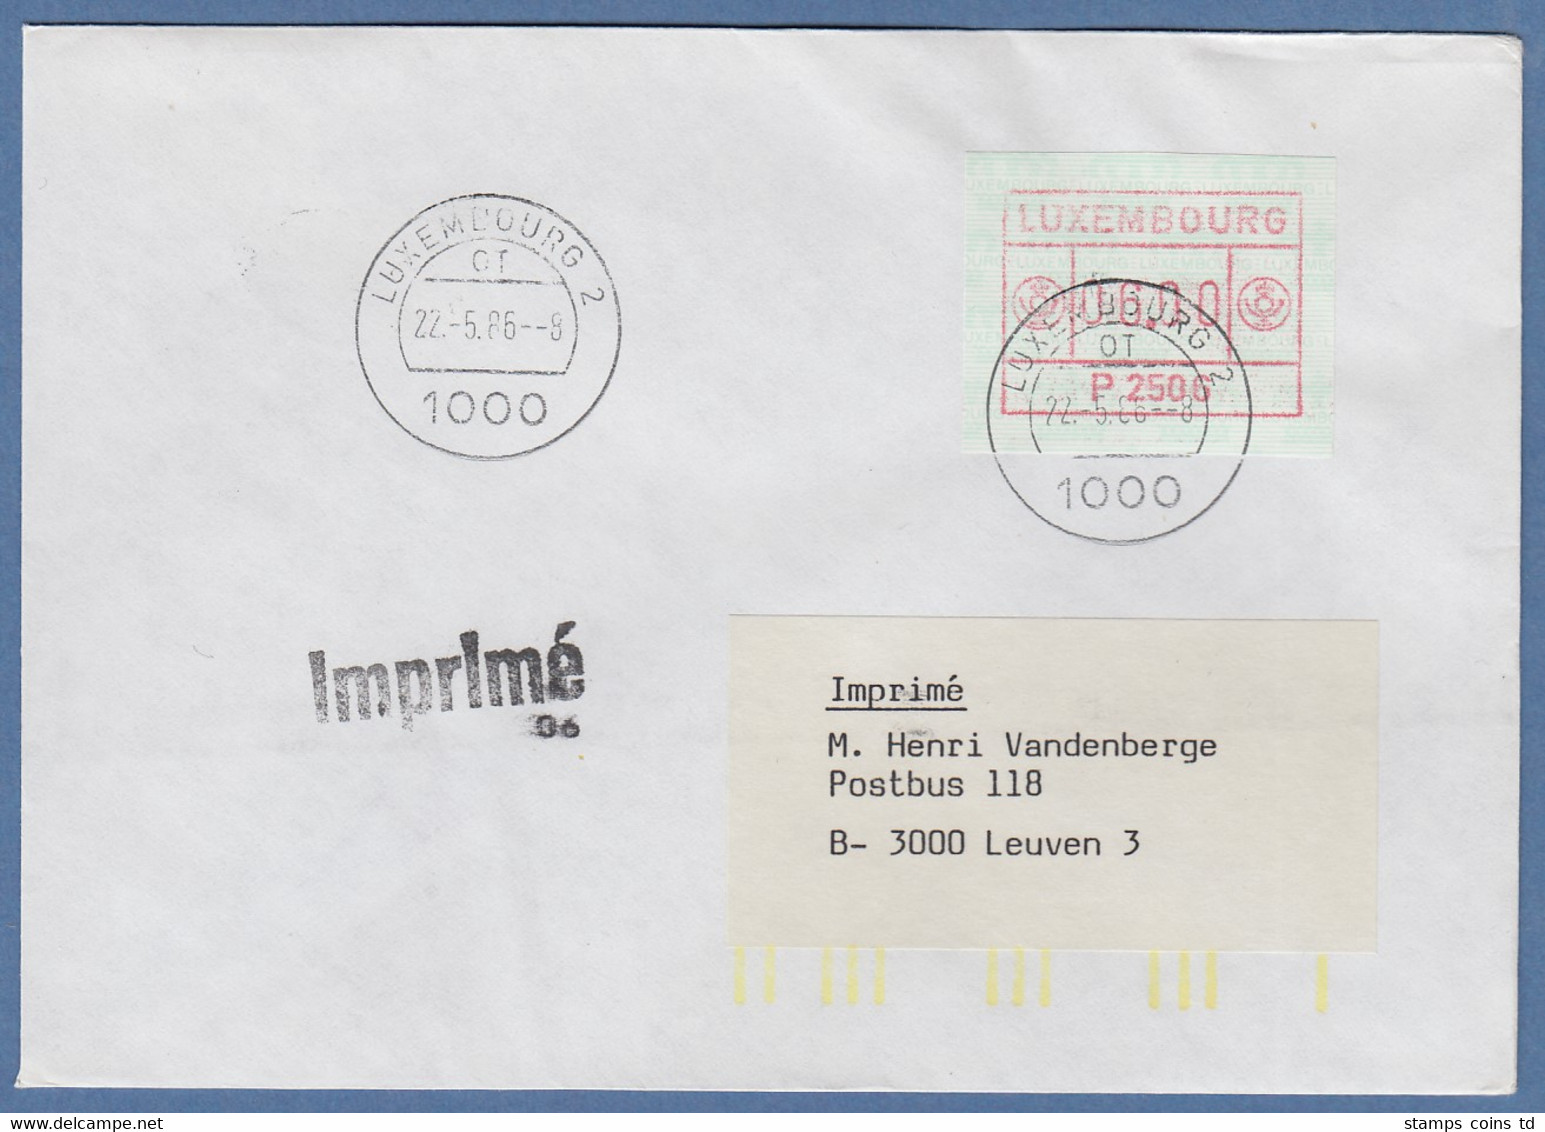 Luxemburg ATM P2506 Wert 6.00 Auf Drucksache-FDC Nach Belgien - Postage Labels